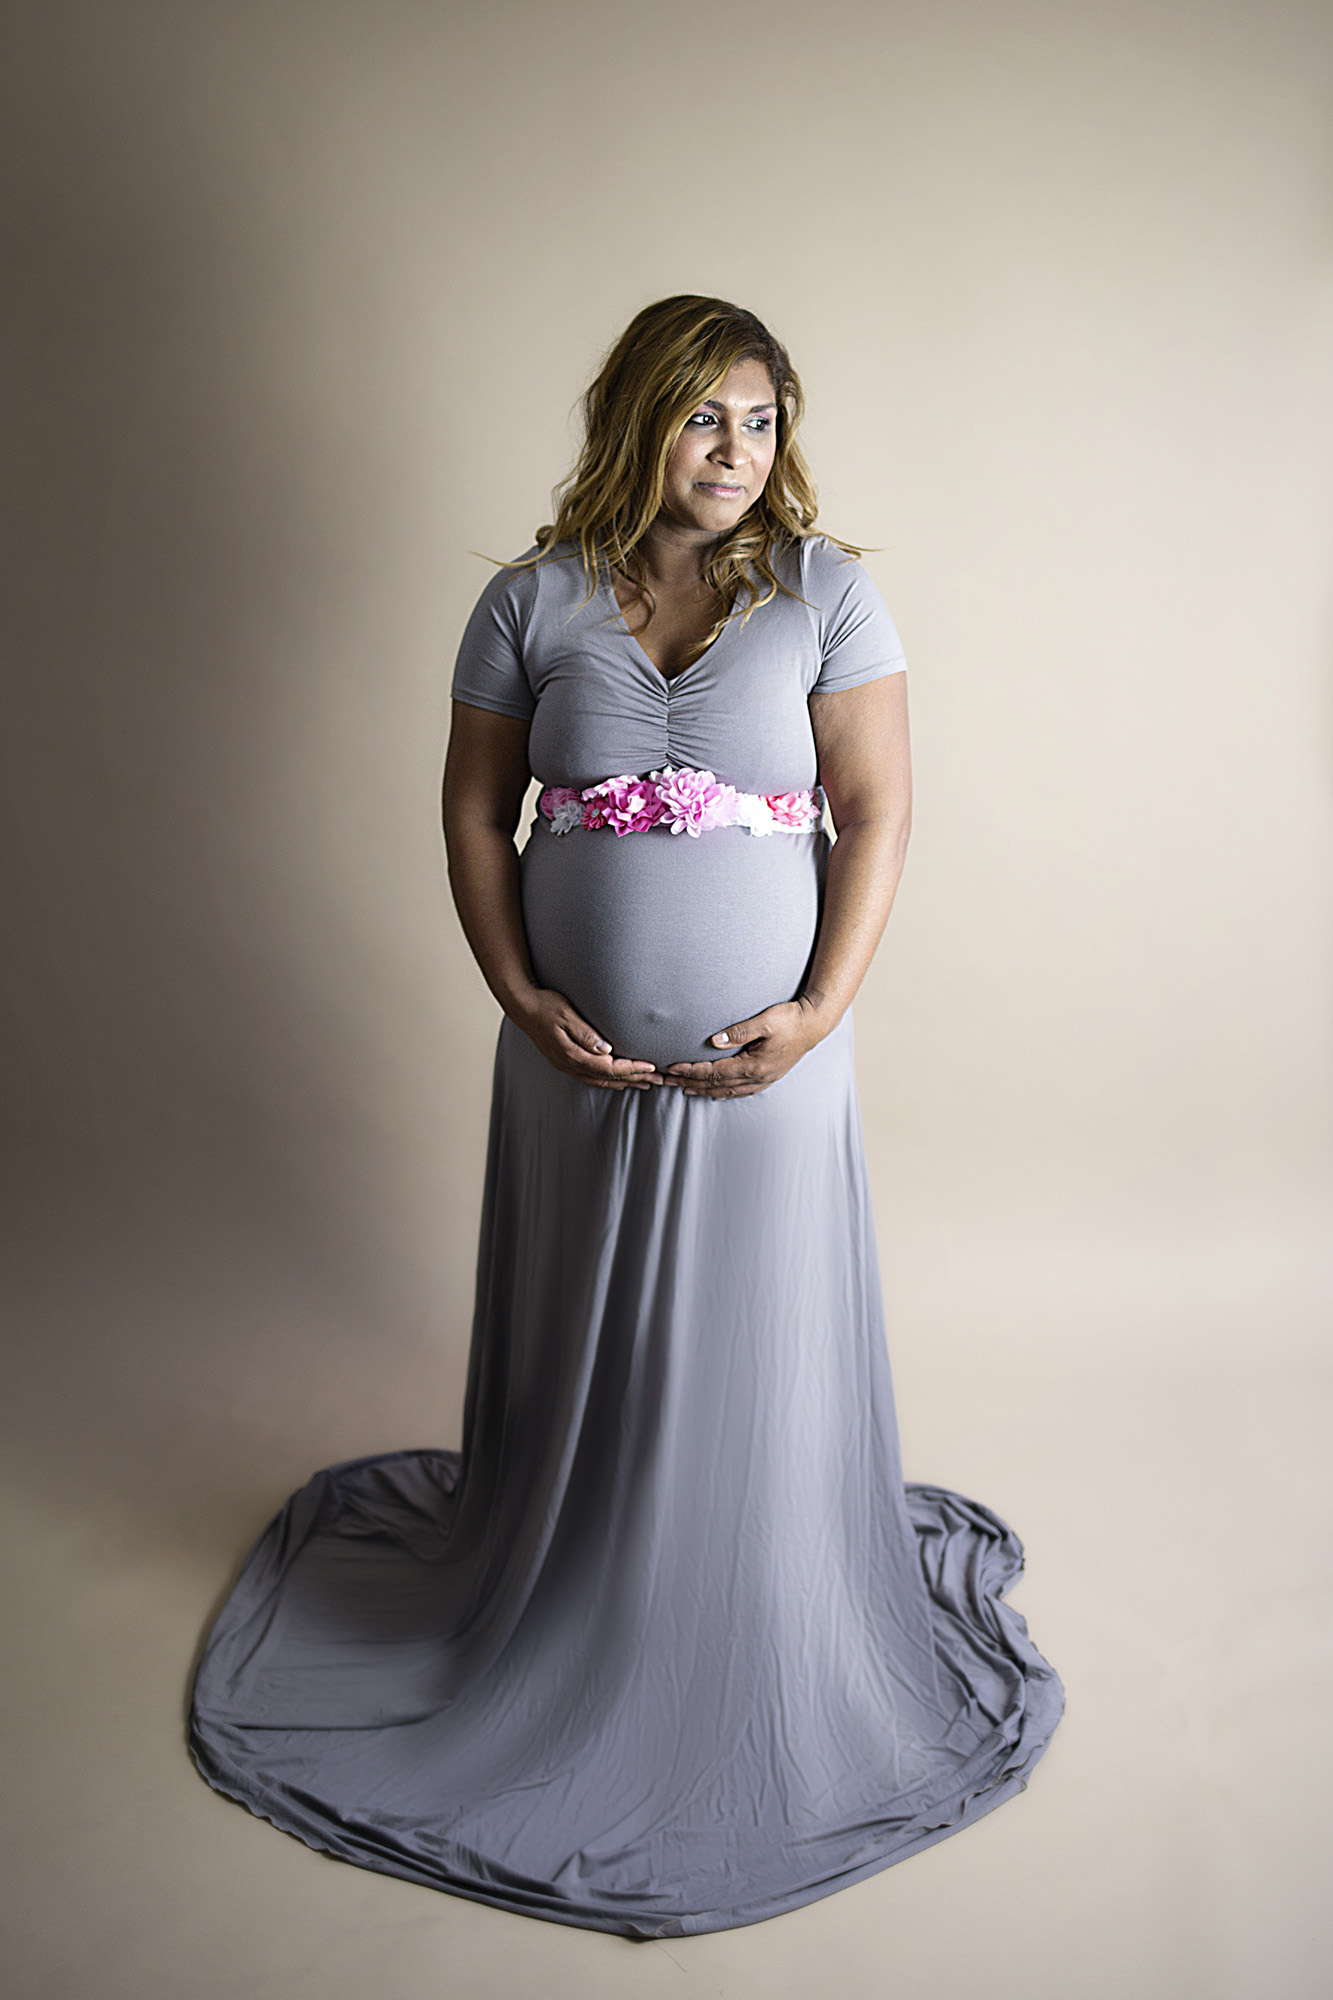 Betere zwangerschapsfotografie studio fotoshoot zwangerschapsjurk mii WB-95